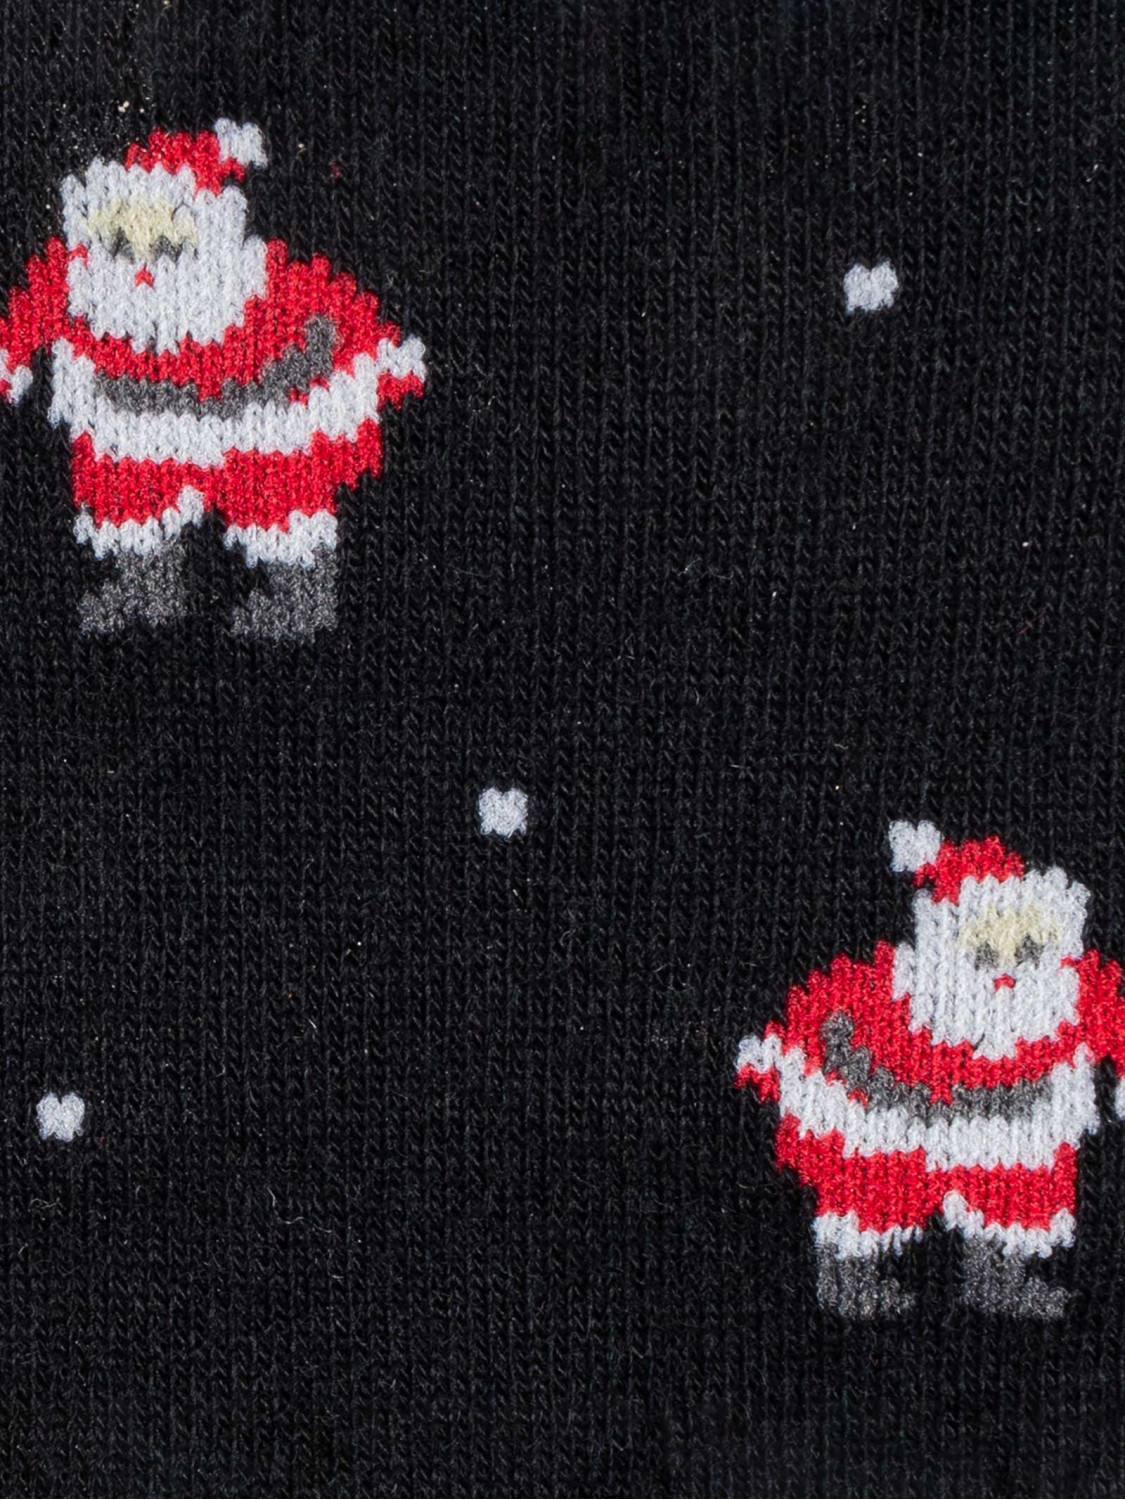 Santa Claus Christmas stockings